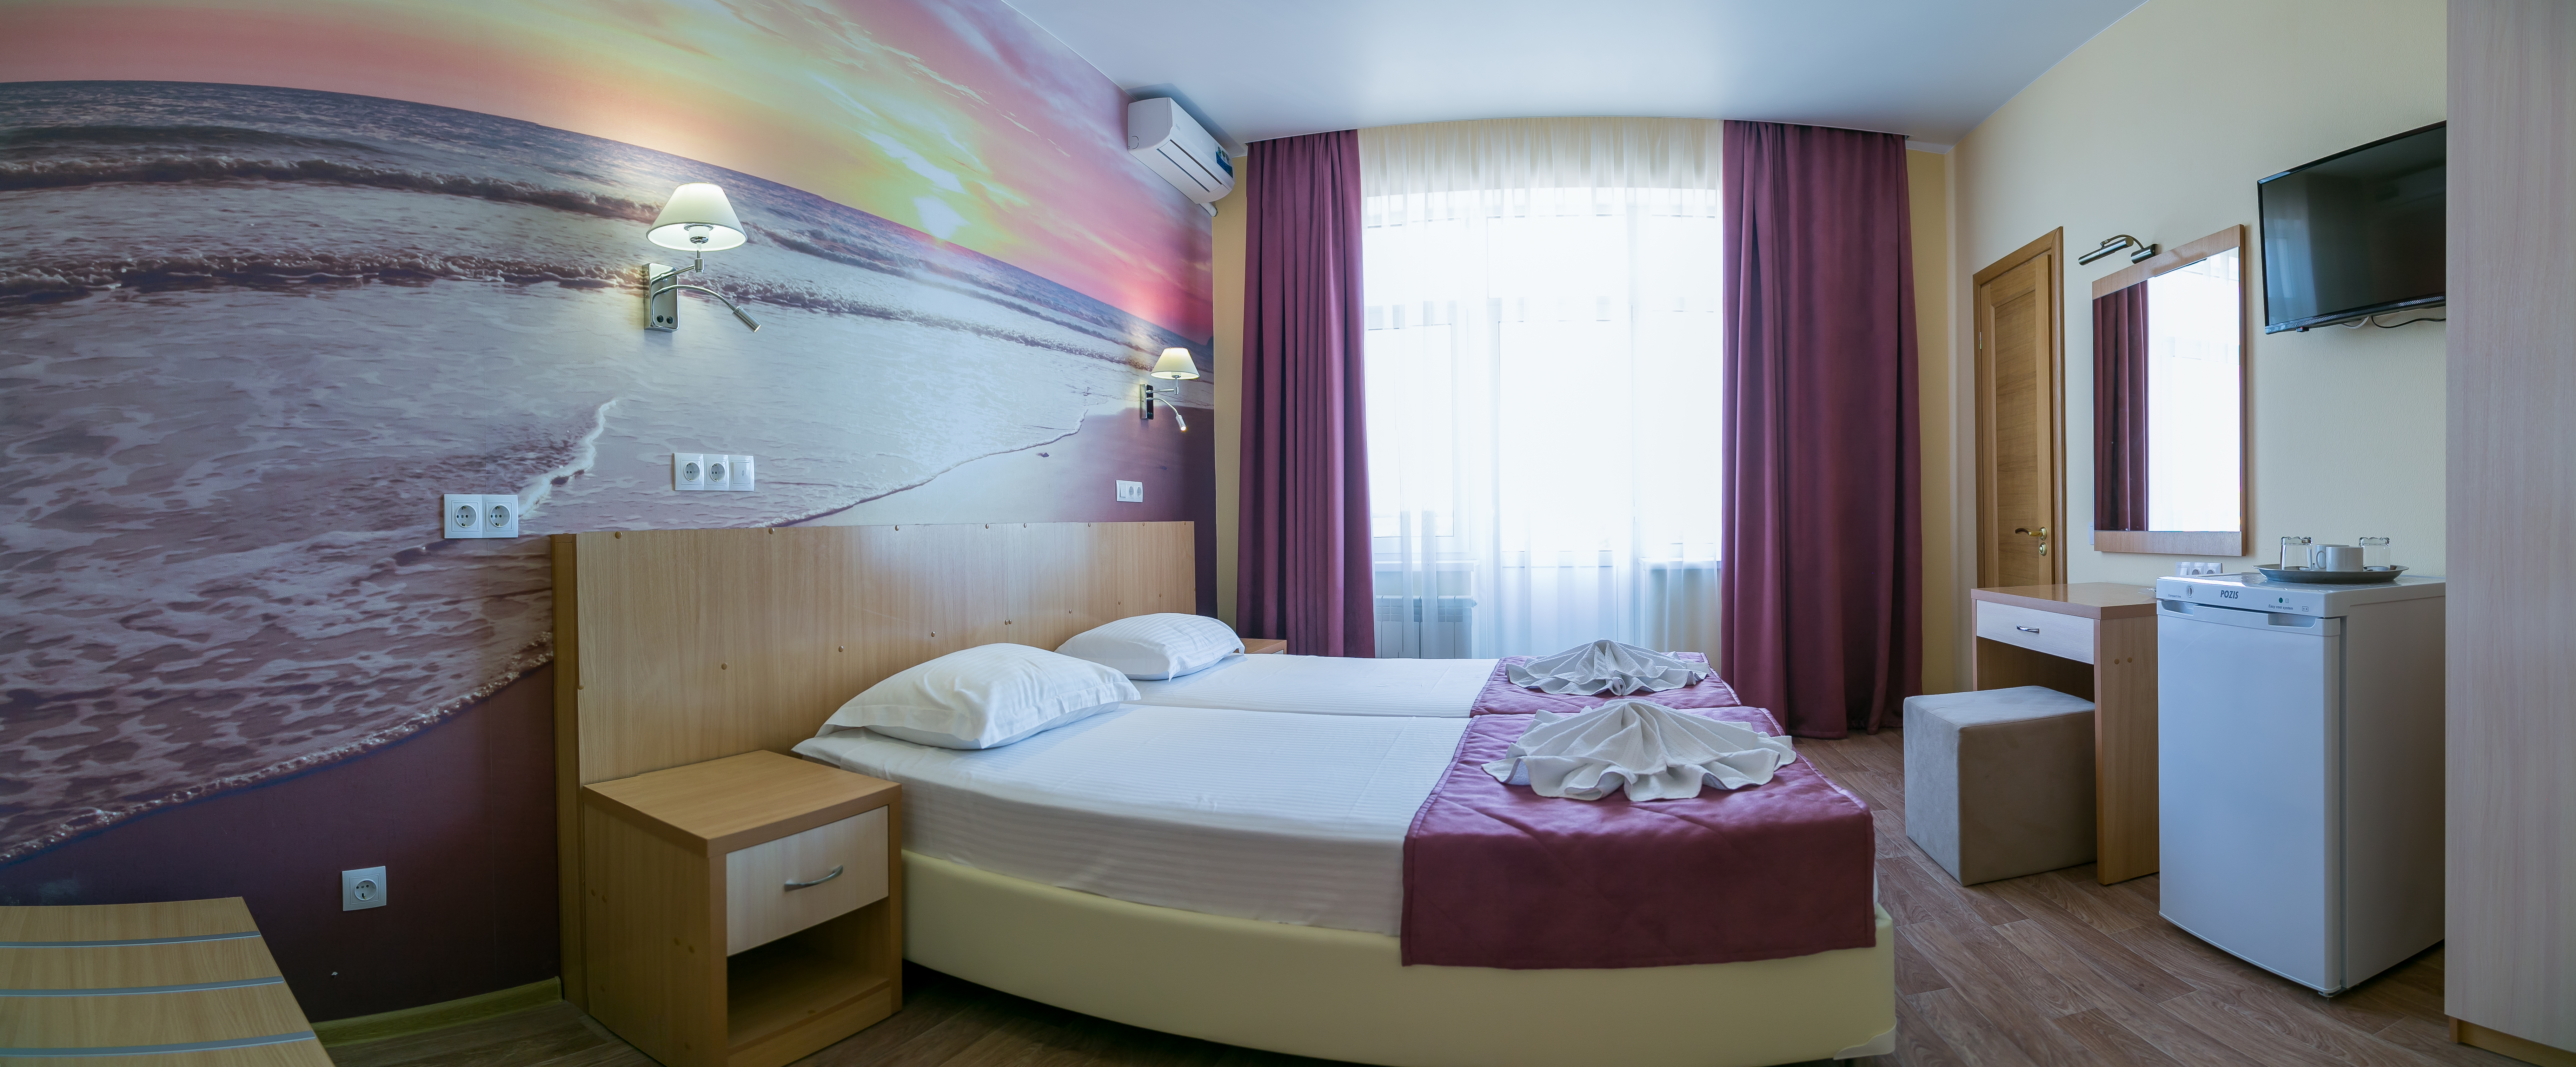 Отель в Николаевке для отдыха с детьми в Крыму 2023